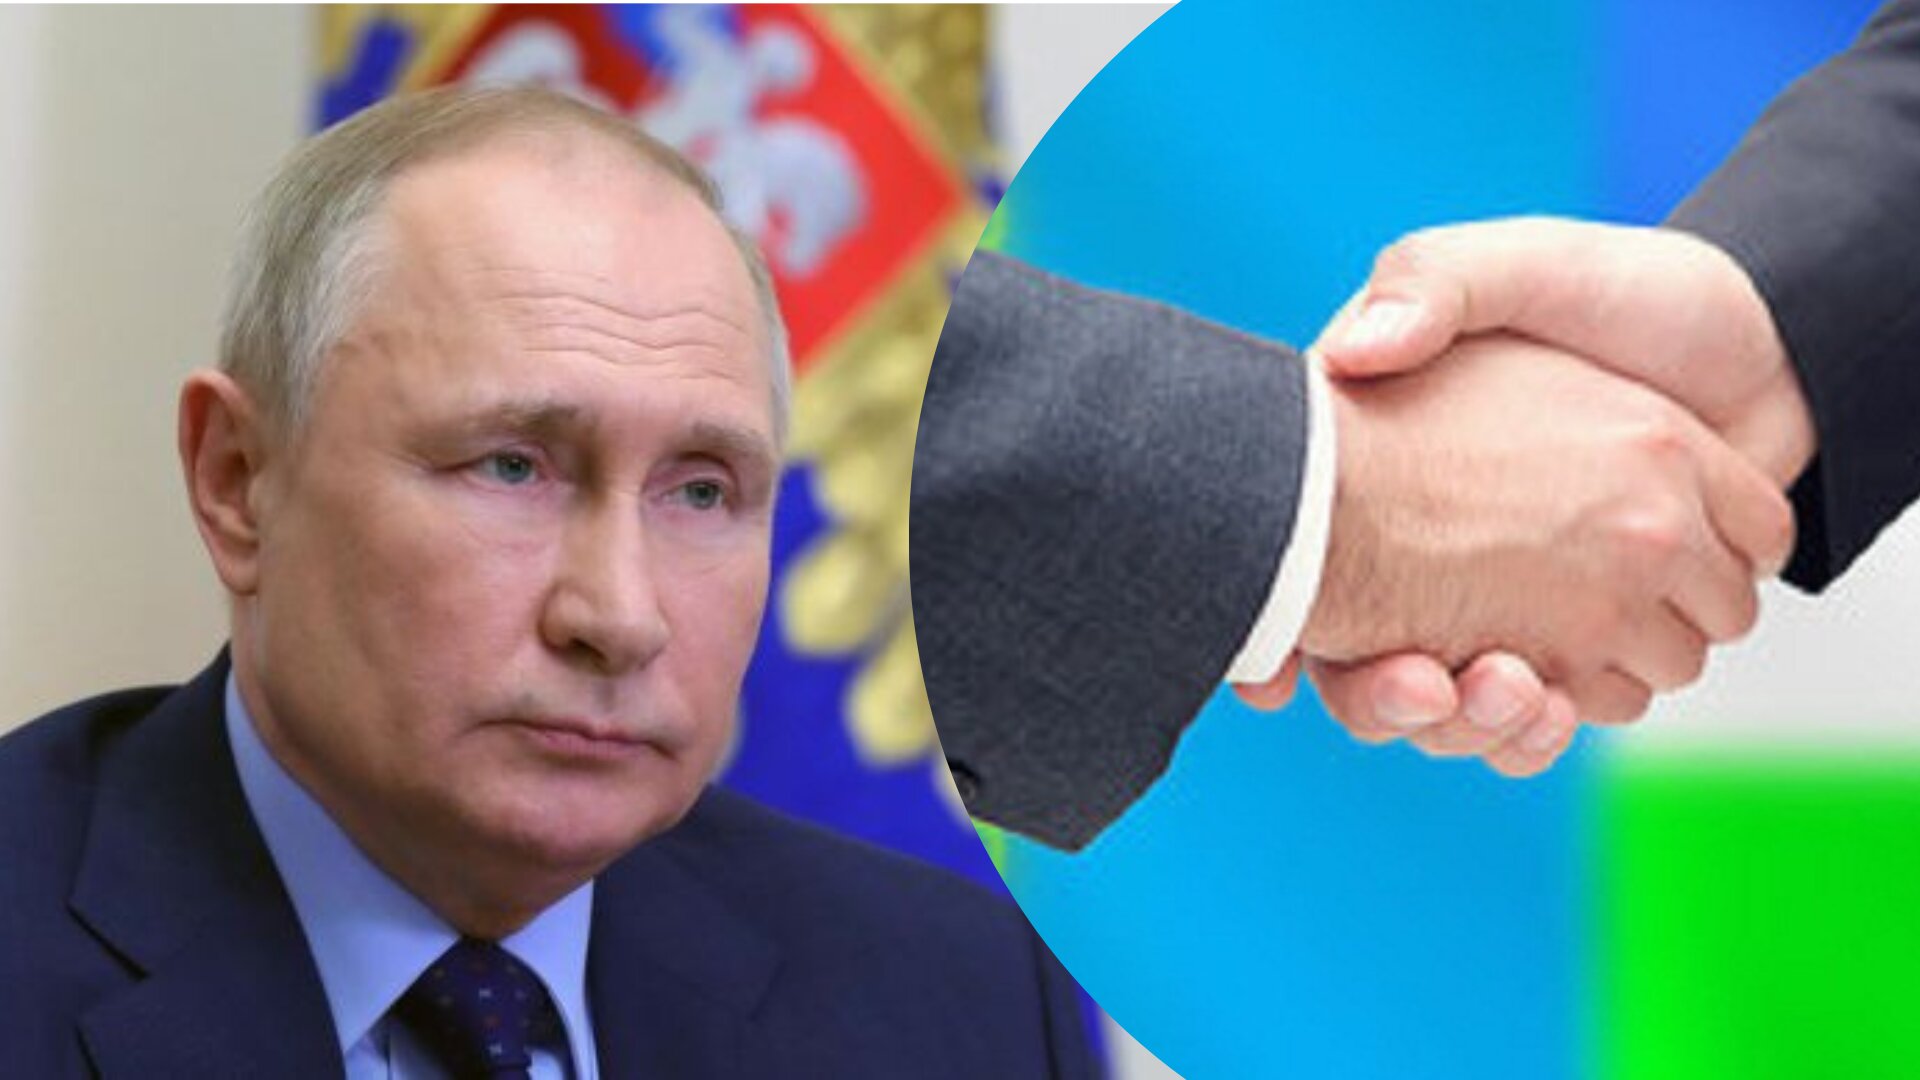 Минулого місяця у росії заявляли, що обговорюють газовий союз із Казахстаном та Узбекистаном, але тепер обидві країни заявили, що відмовилися від такої угоди.

